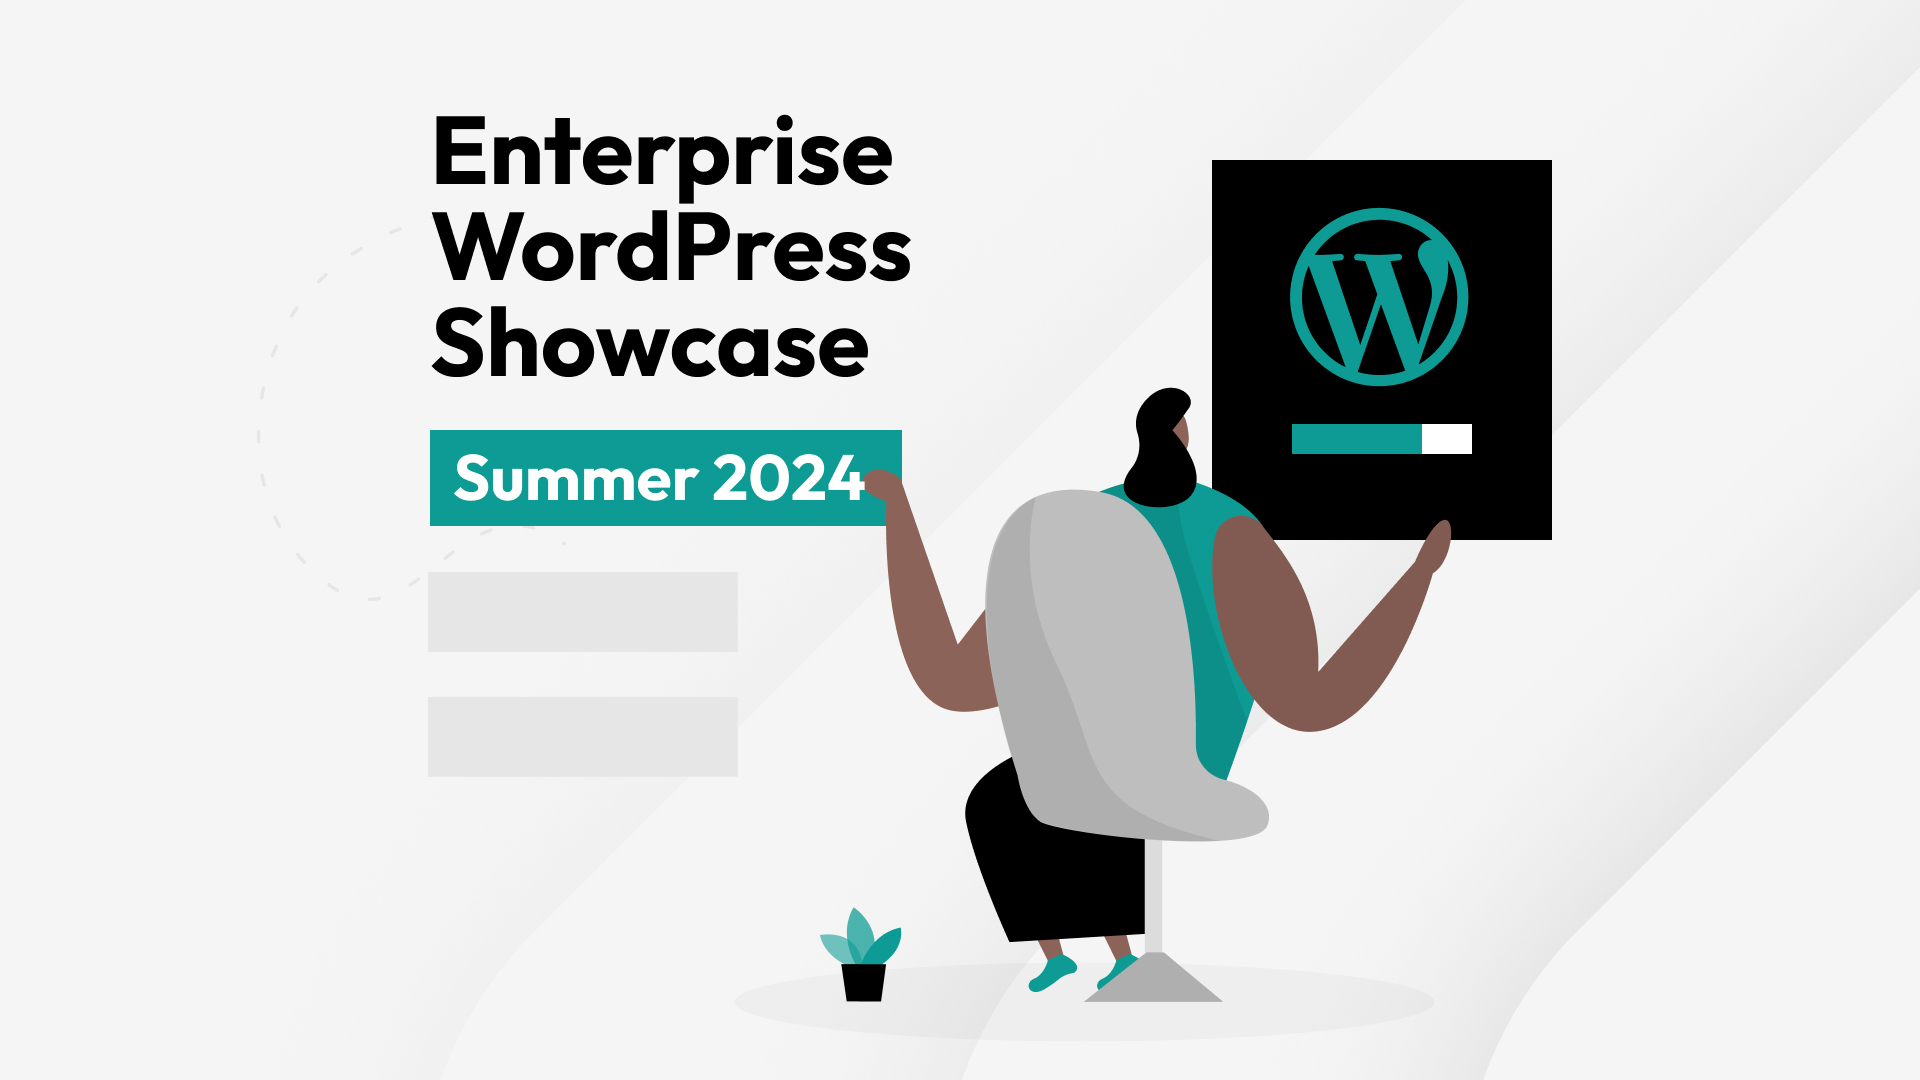 Enterprise WordPress Showcase: Summer 2024